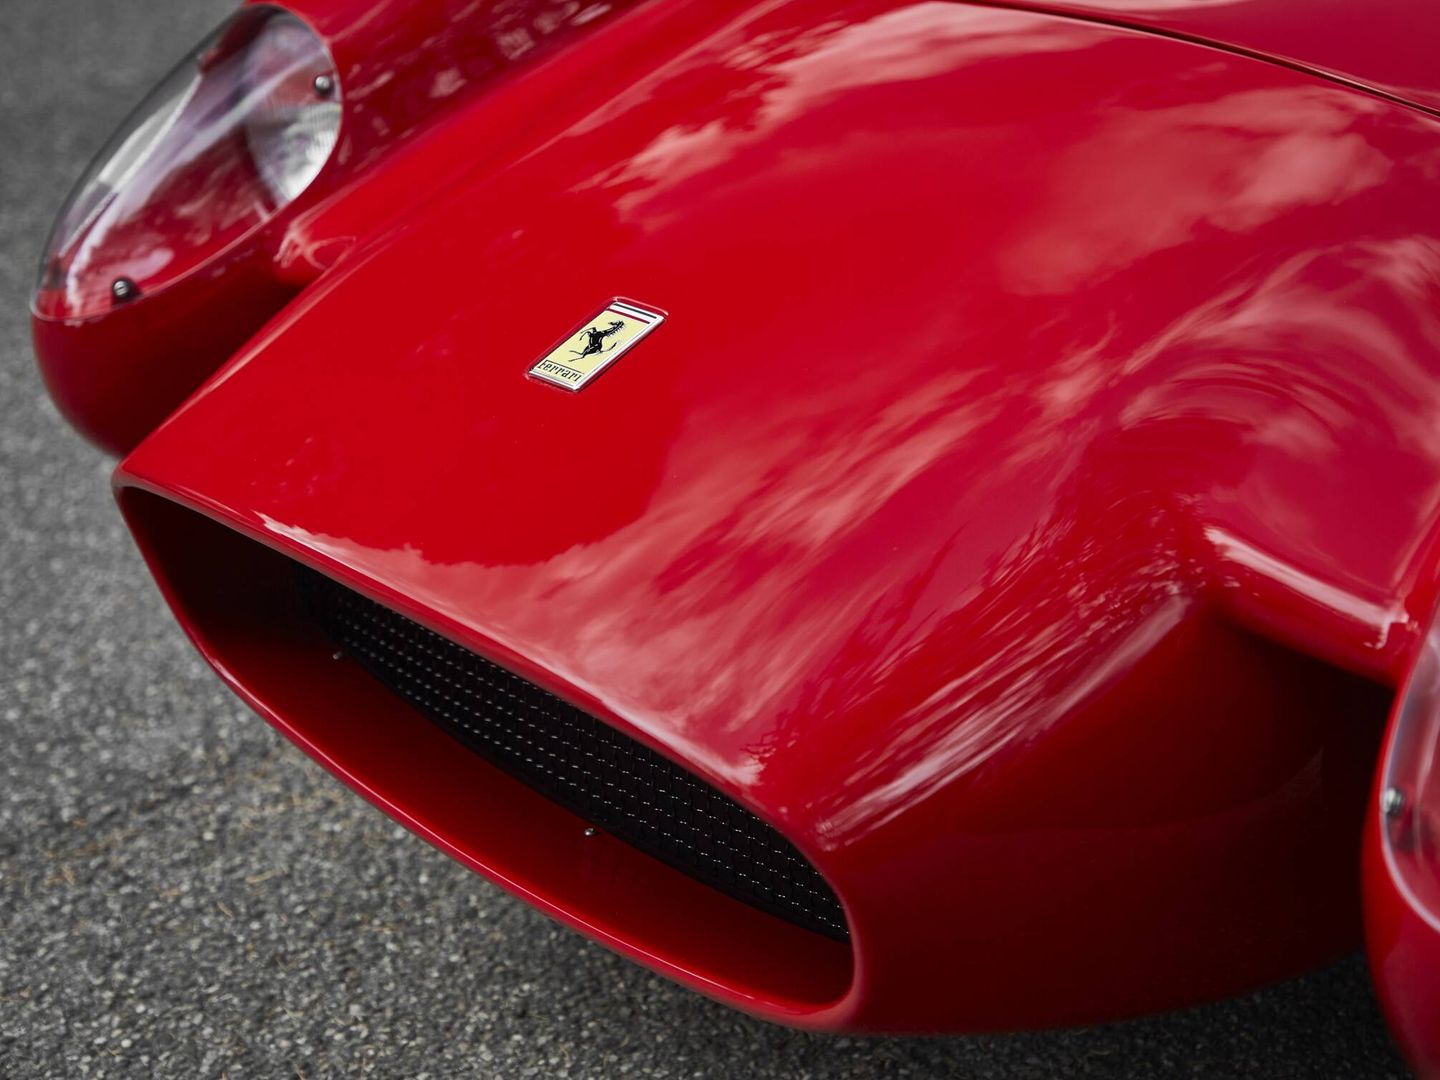 Carrocería de aluminio moldeada a mano, como en los Ferrari antiguos. Pero el proceso de pintado sí es moderno.